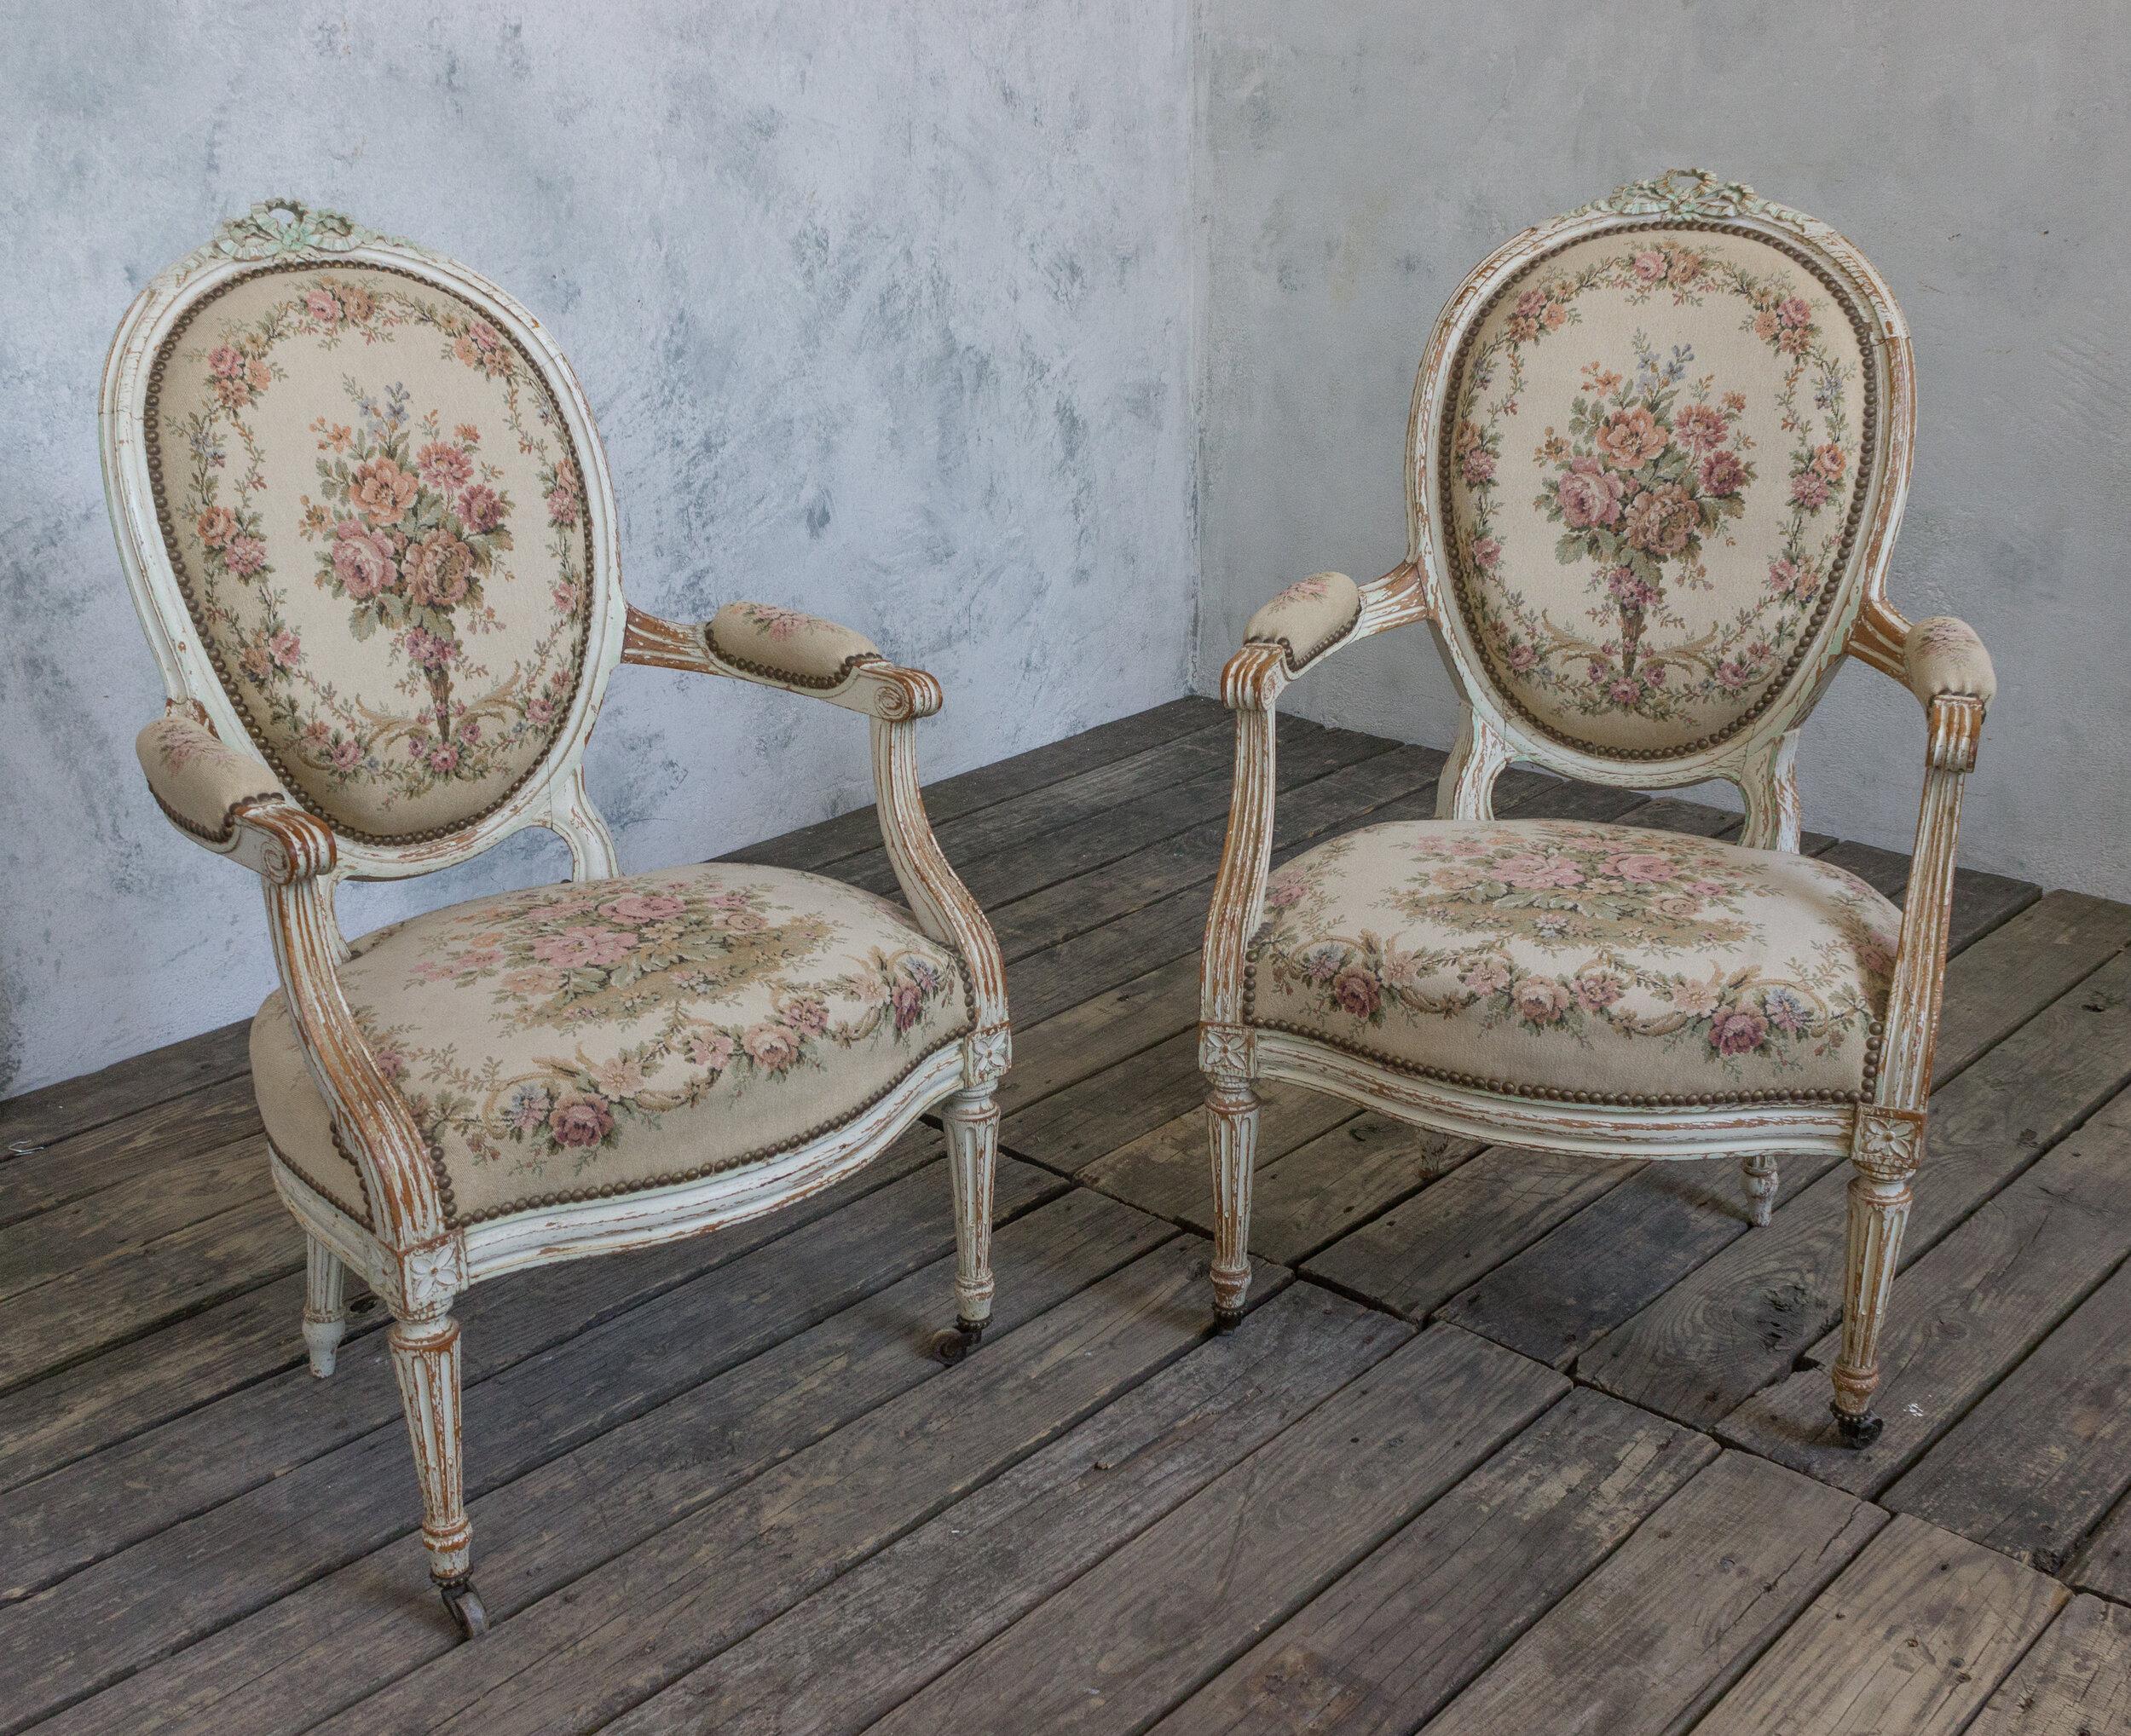 Ein exquisites Paar französischer Sessel im Louis-XVI-Stil. Erhöhen Sie Ihre Einrichtung mit diesem klassischen Paar französischer Sessel aus dem 19. Jahrhundert in die Höhen von Luxus und Eleganz. Dieses Paar aus weiß gewaschenen, patinierten